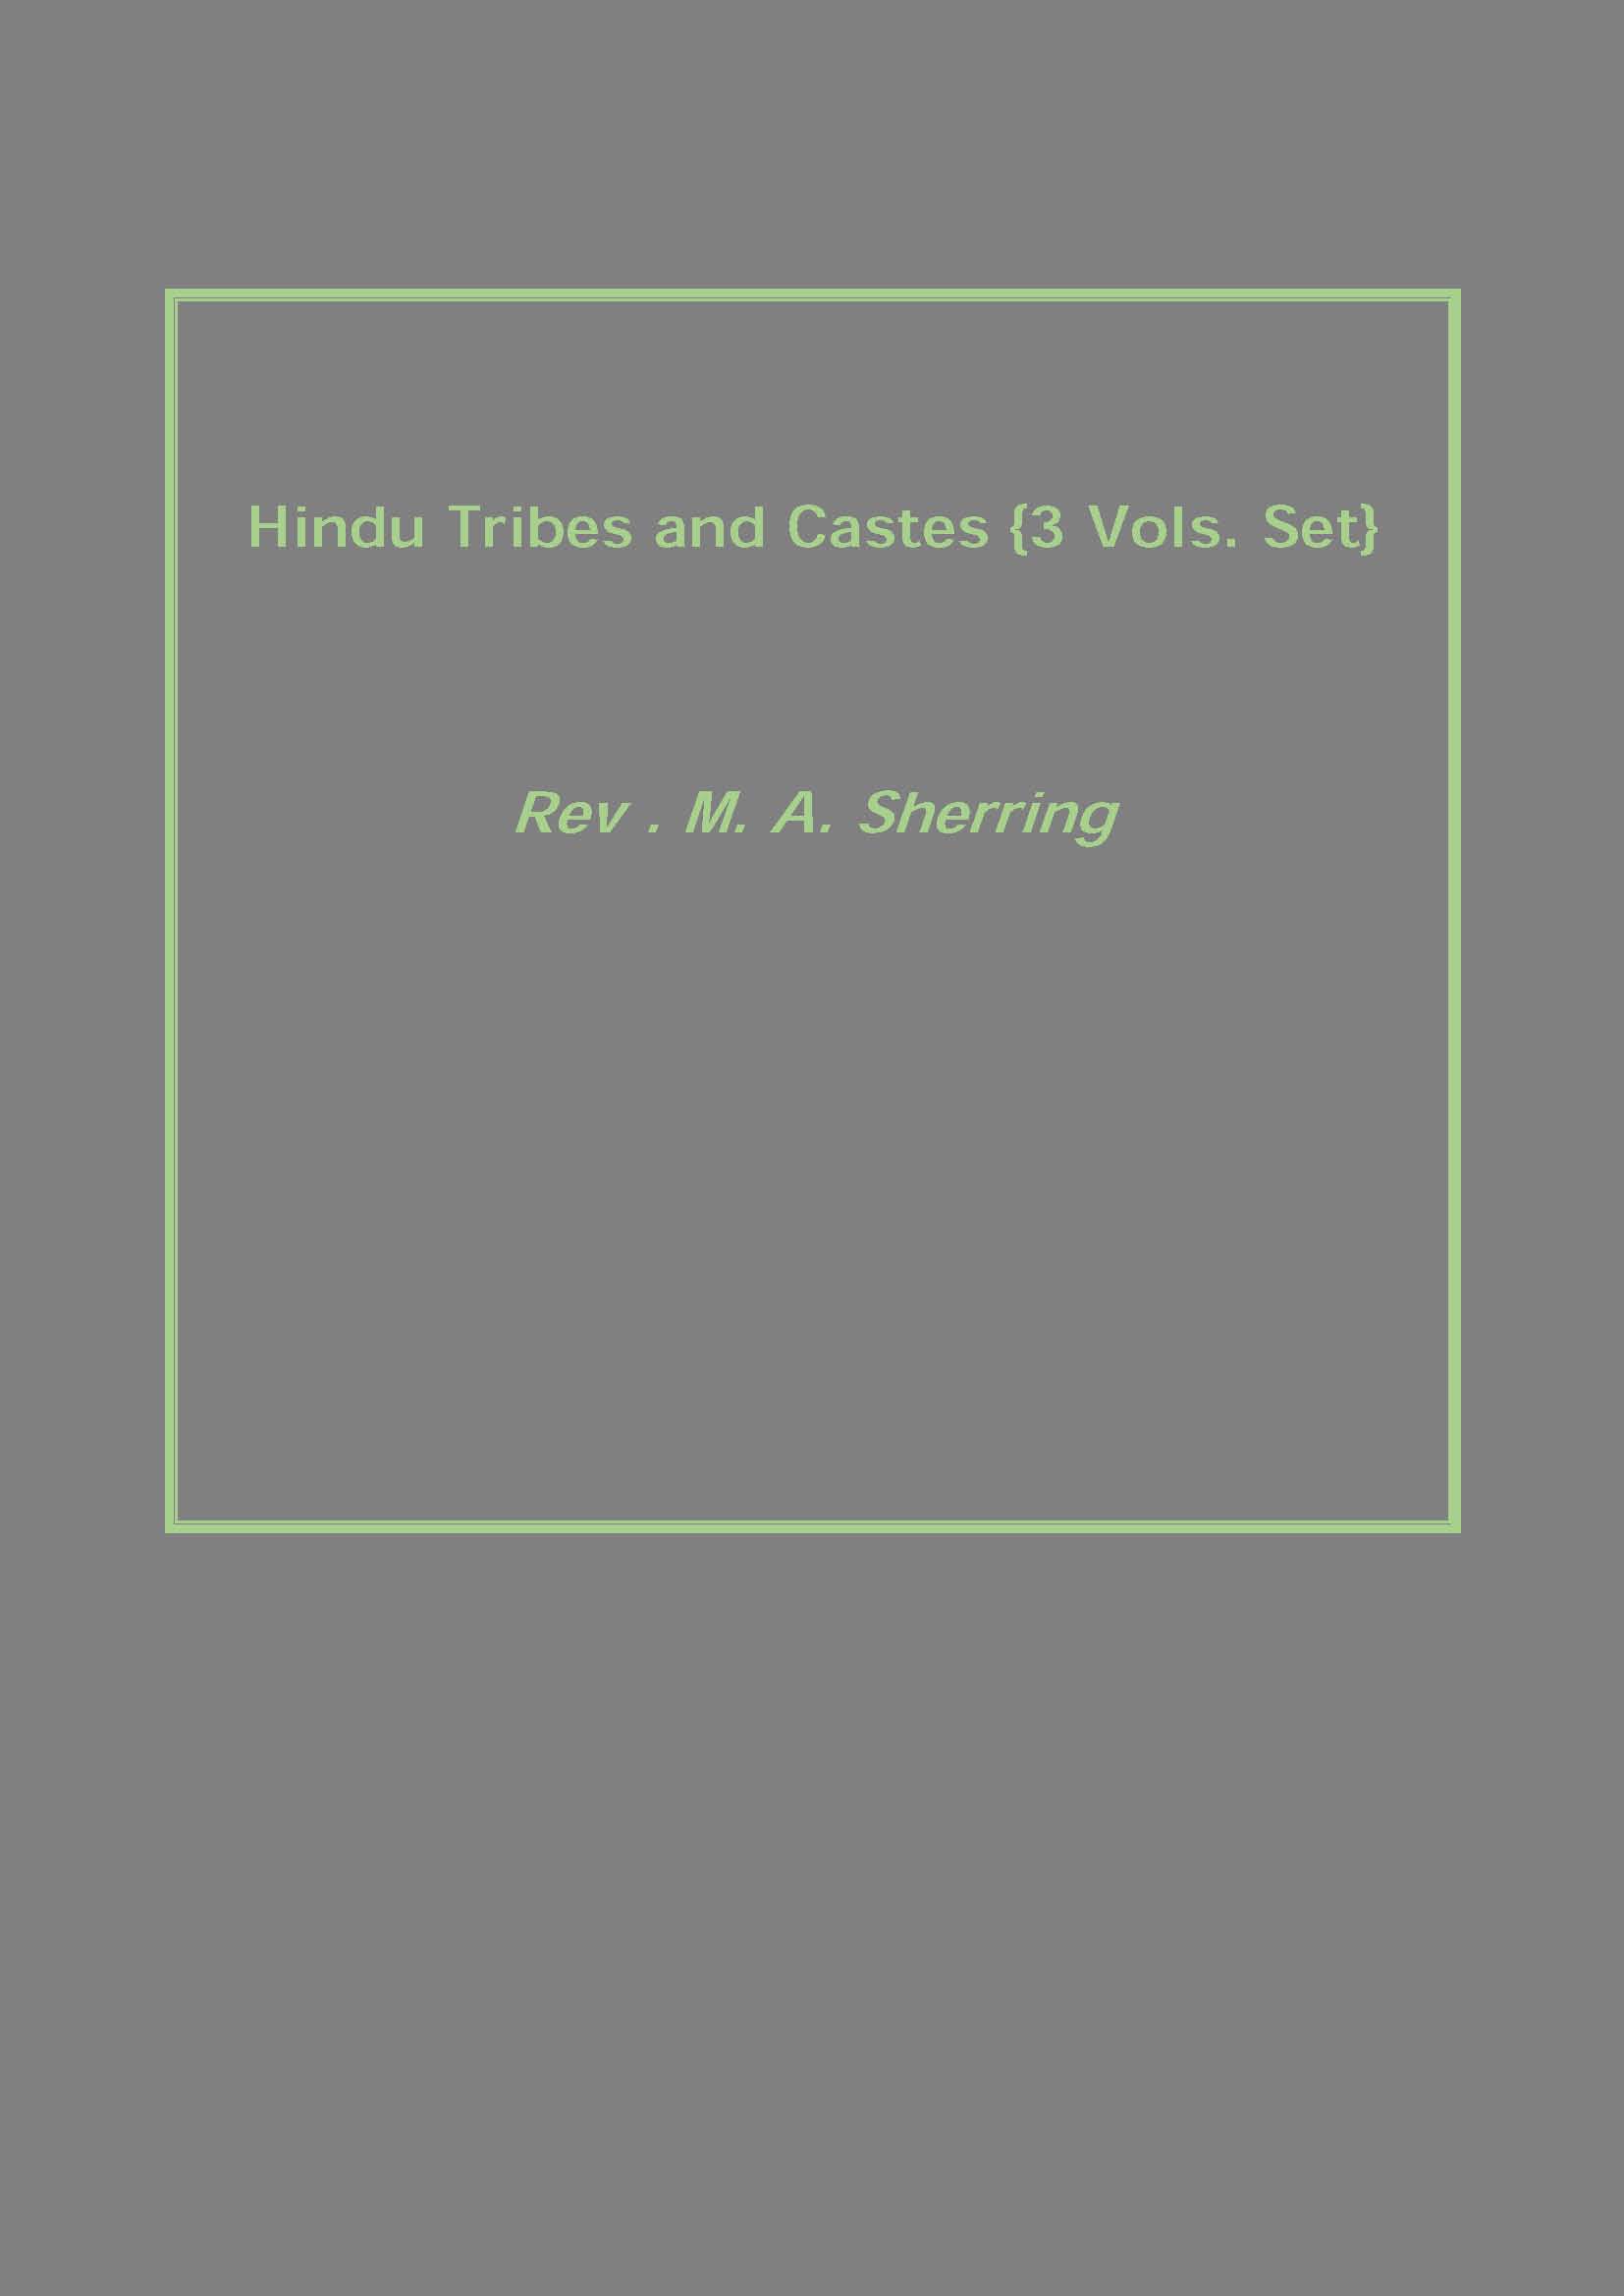 Hindu Tribes and Castes 3 Vols. Set 3 Vols. Set